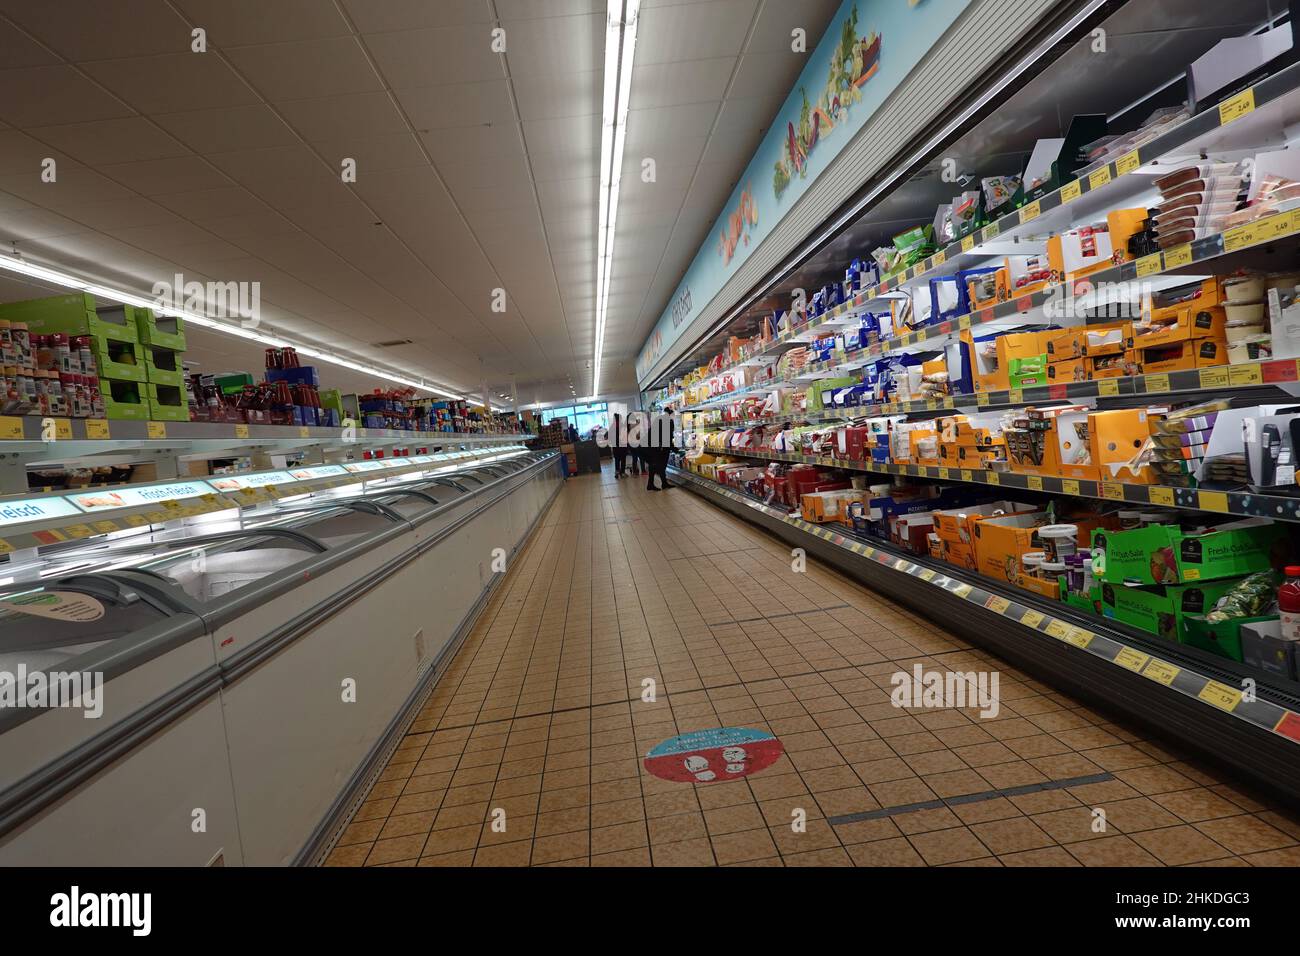 Kühltheke in einem Supermarkt - Symbolbild Stock Photo